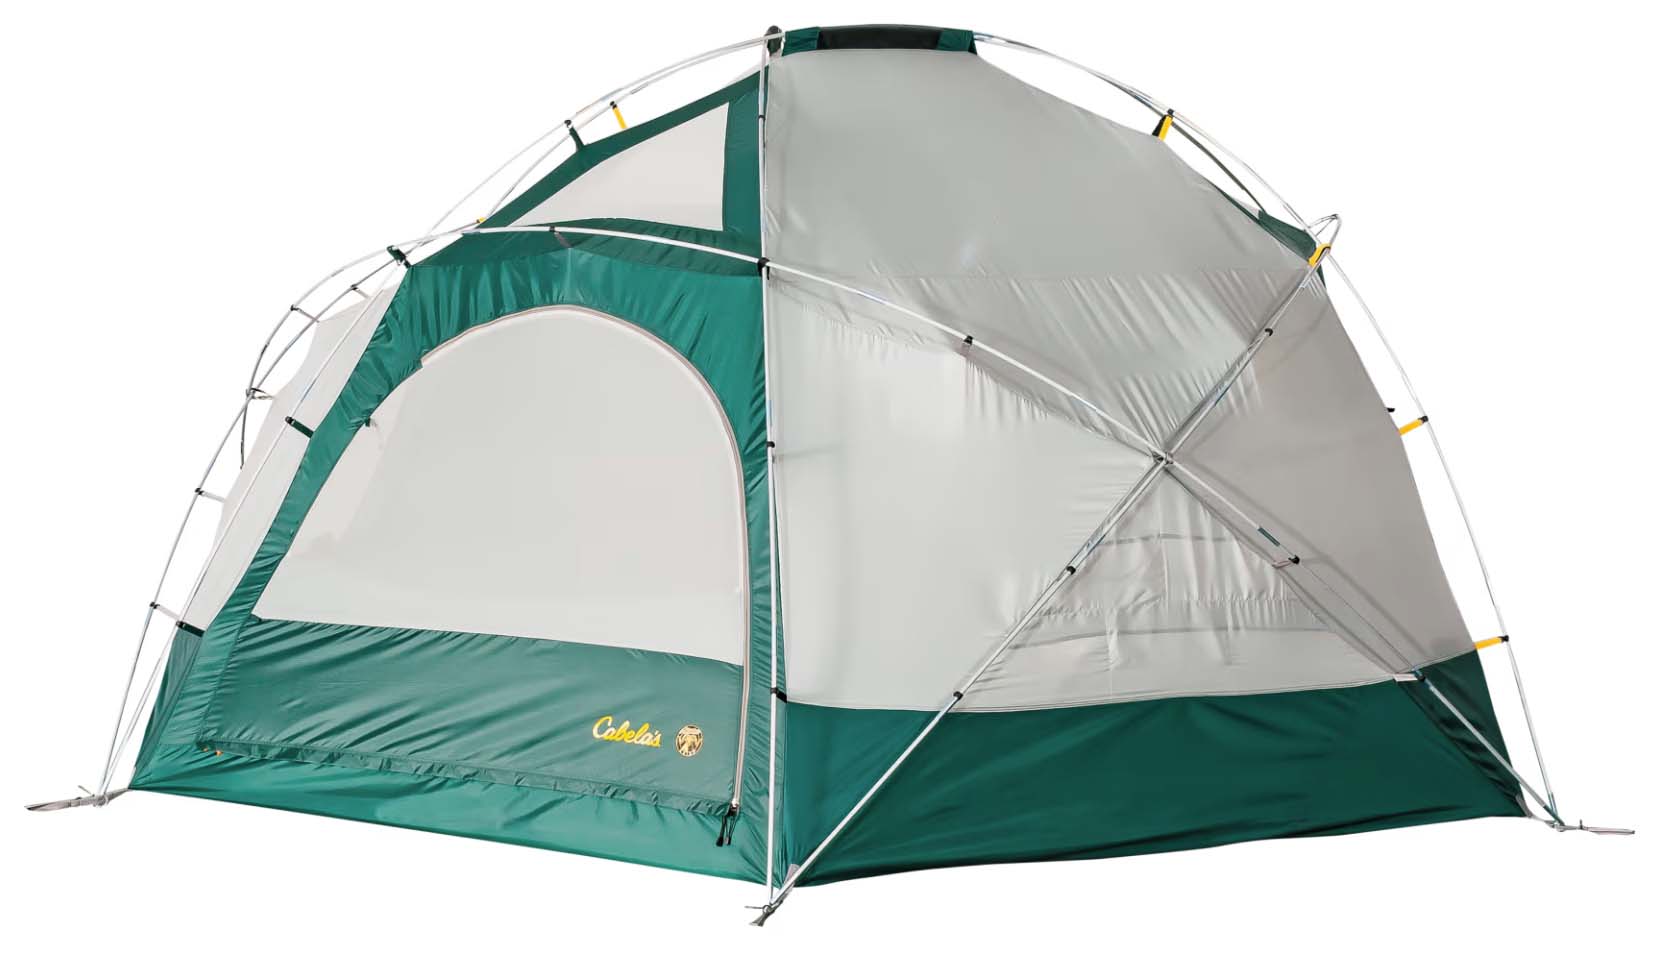 Cabela's Alaskan Guide Model 8P camping tent